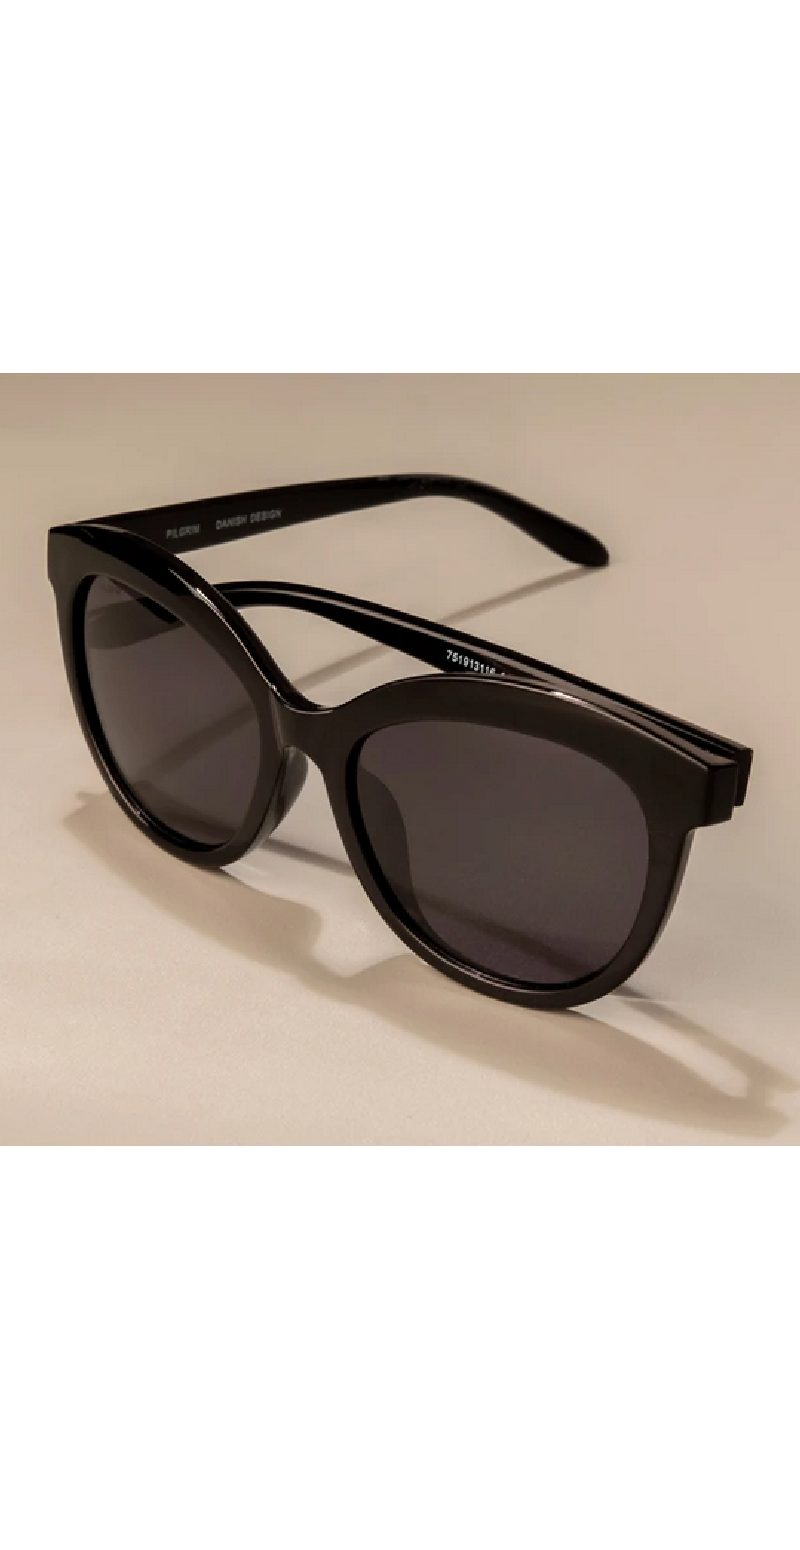 Sort solbriller med chunky LikeLondon.com